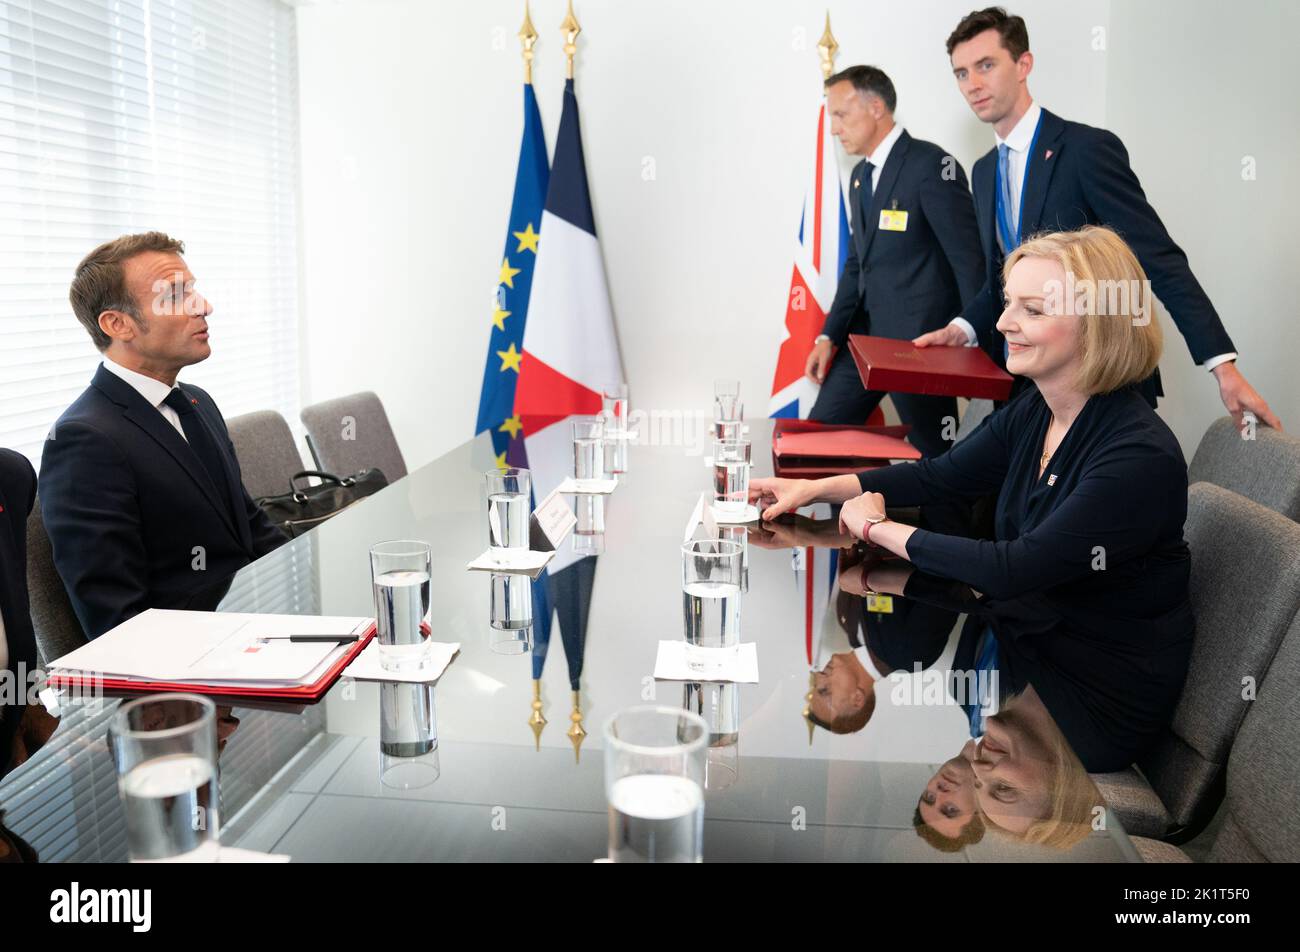 La primera ministra Liz Truss (derecha) celebra una reunión bilateral con el presidente de Francia, Emmanuel Macron (izquierda), en la sede de las Naciones Unidas en Nueva York, durante su visita a Estados Unidos para asistir a la Asamblea General de las Naciones Unidas de 77th. Fecha de la foto: Martes 20 de septiembre de 2022. Foto de stock